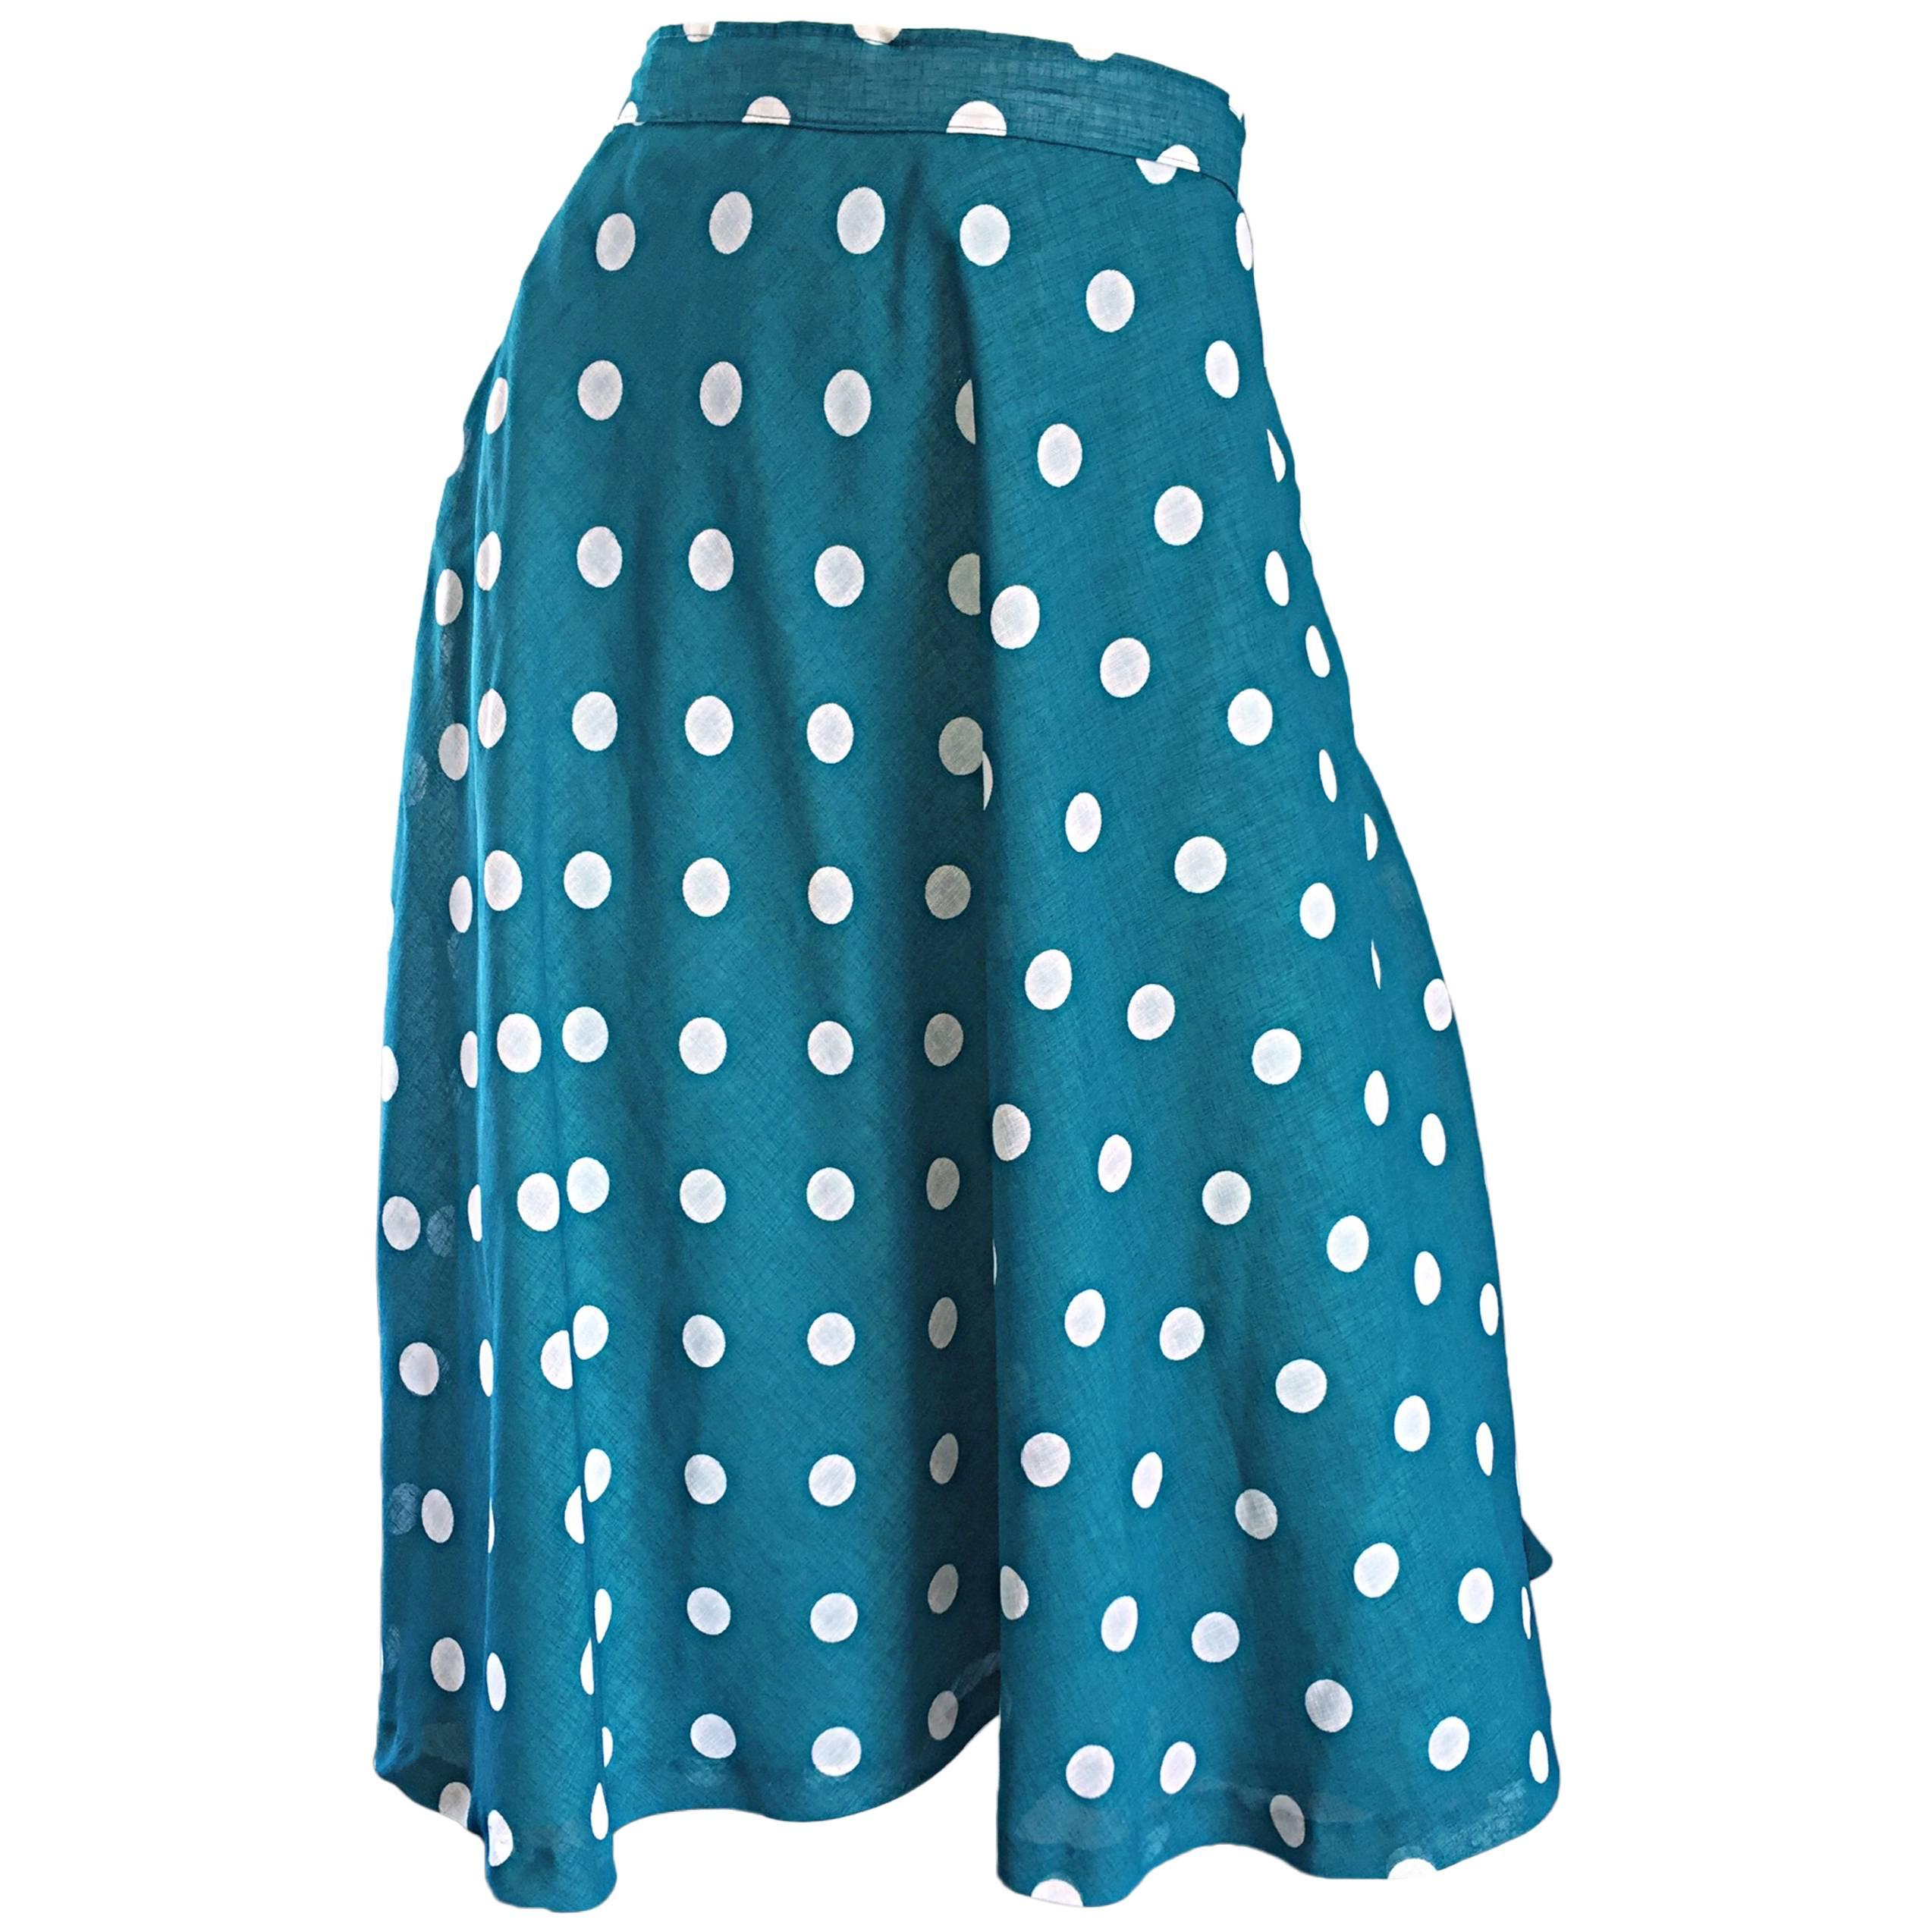 1950s Turquoise Blue + White Polka Dot Full Vintage 50s Cotton Voile Skirt 